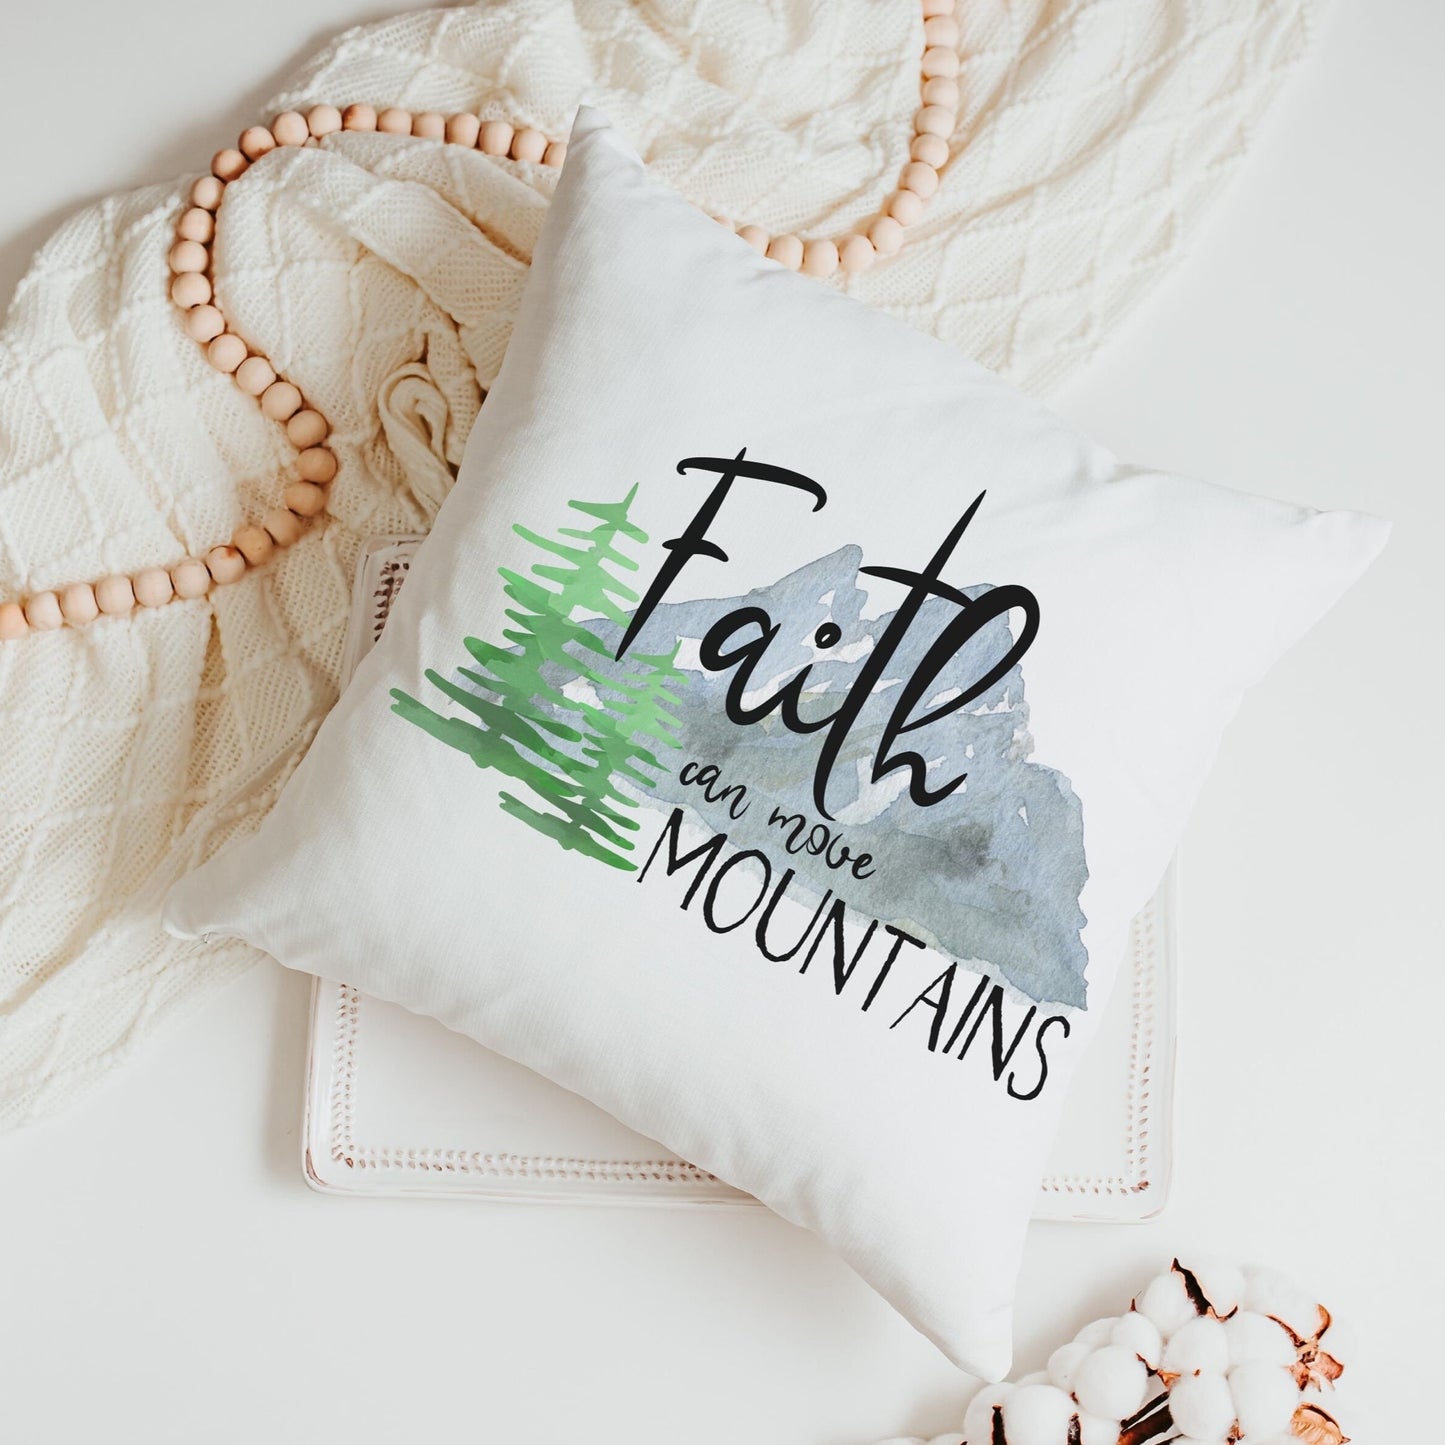 Faith can move mountains pillow